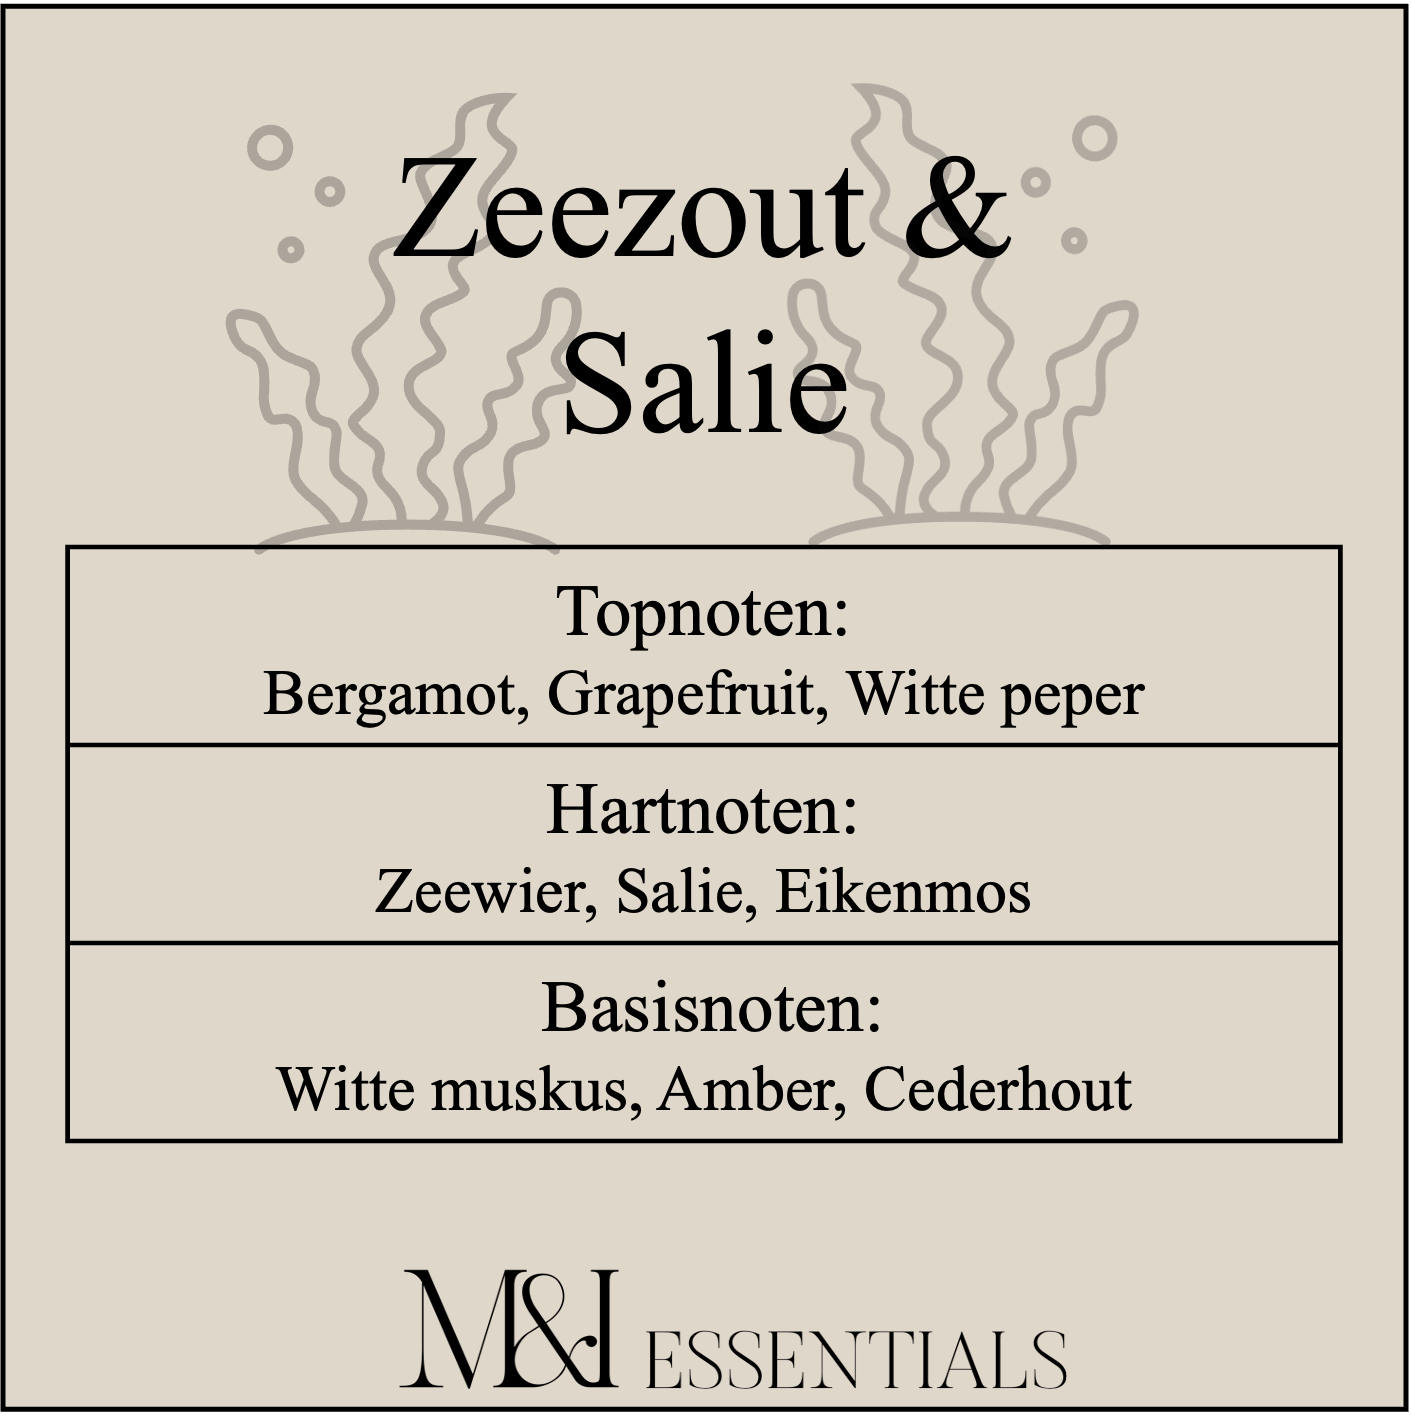 Zeezout & Salie - Wax melts